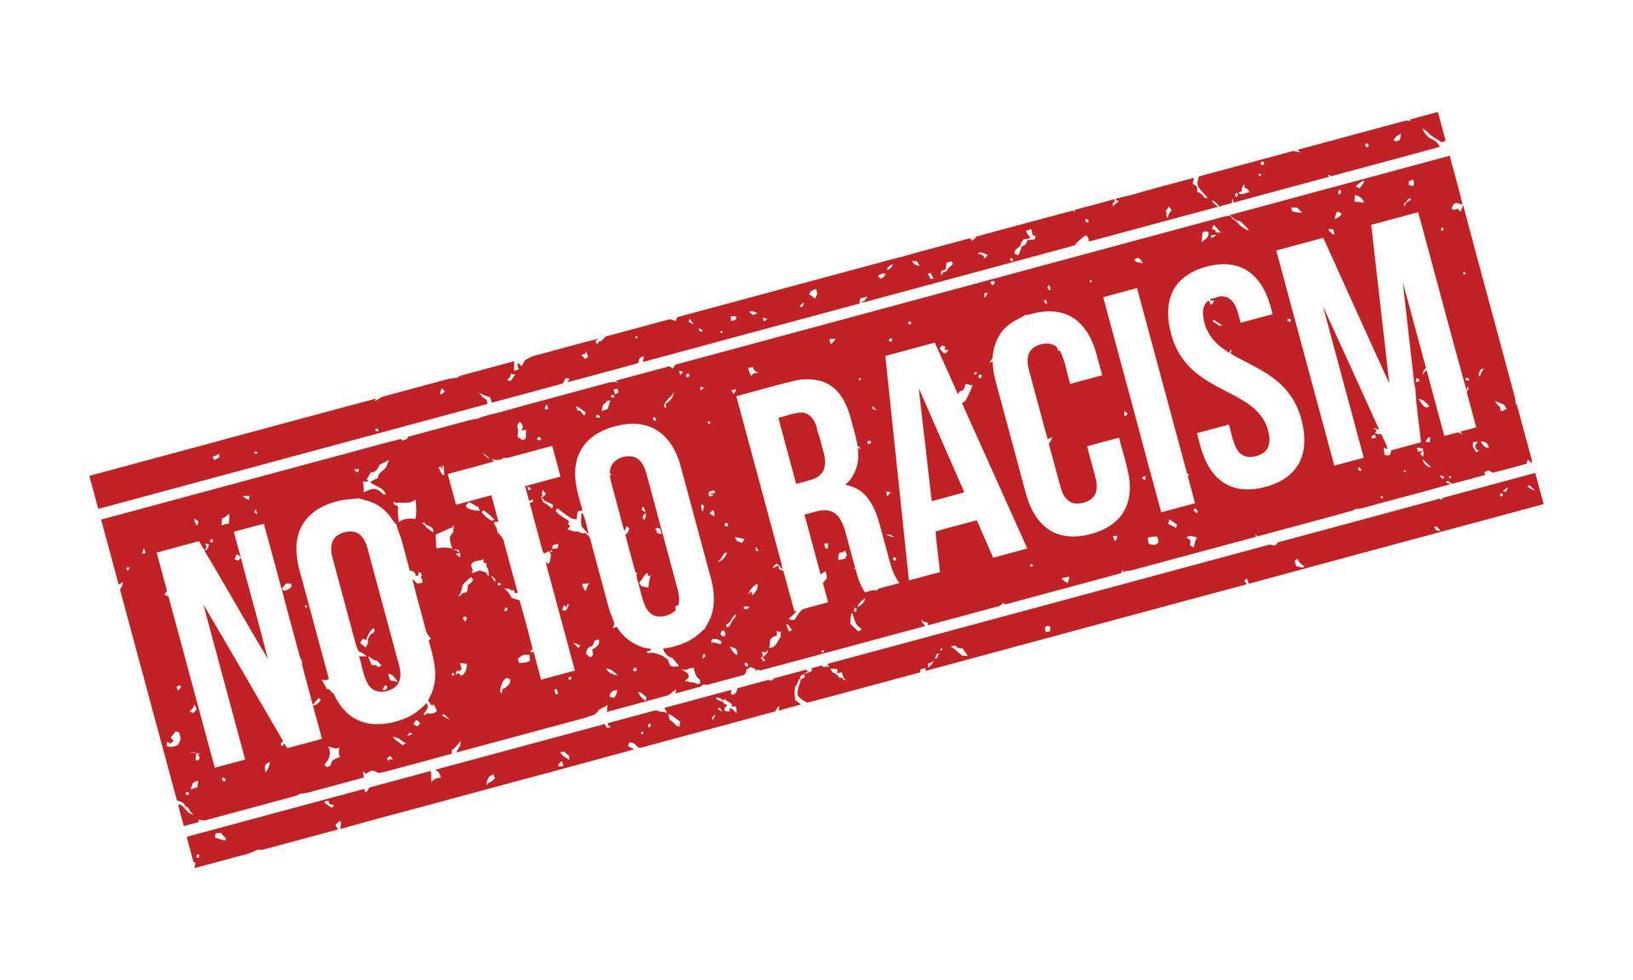 Nee naar racisme rubber grunge postzegel zegel vector illustratie